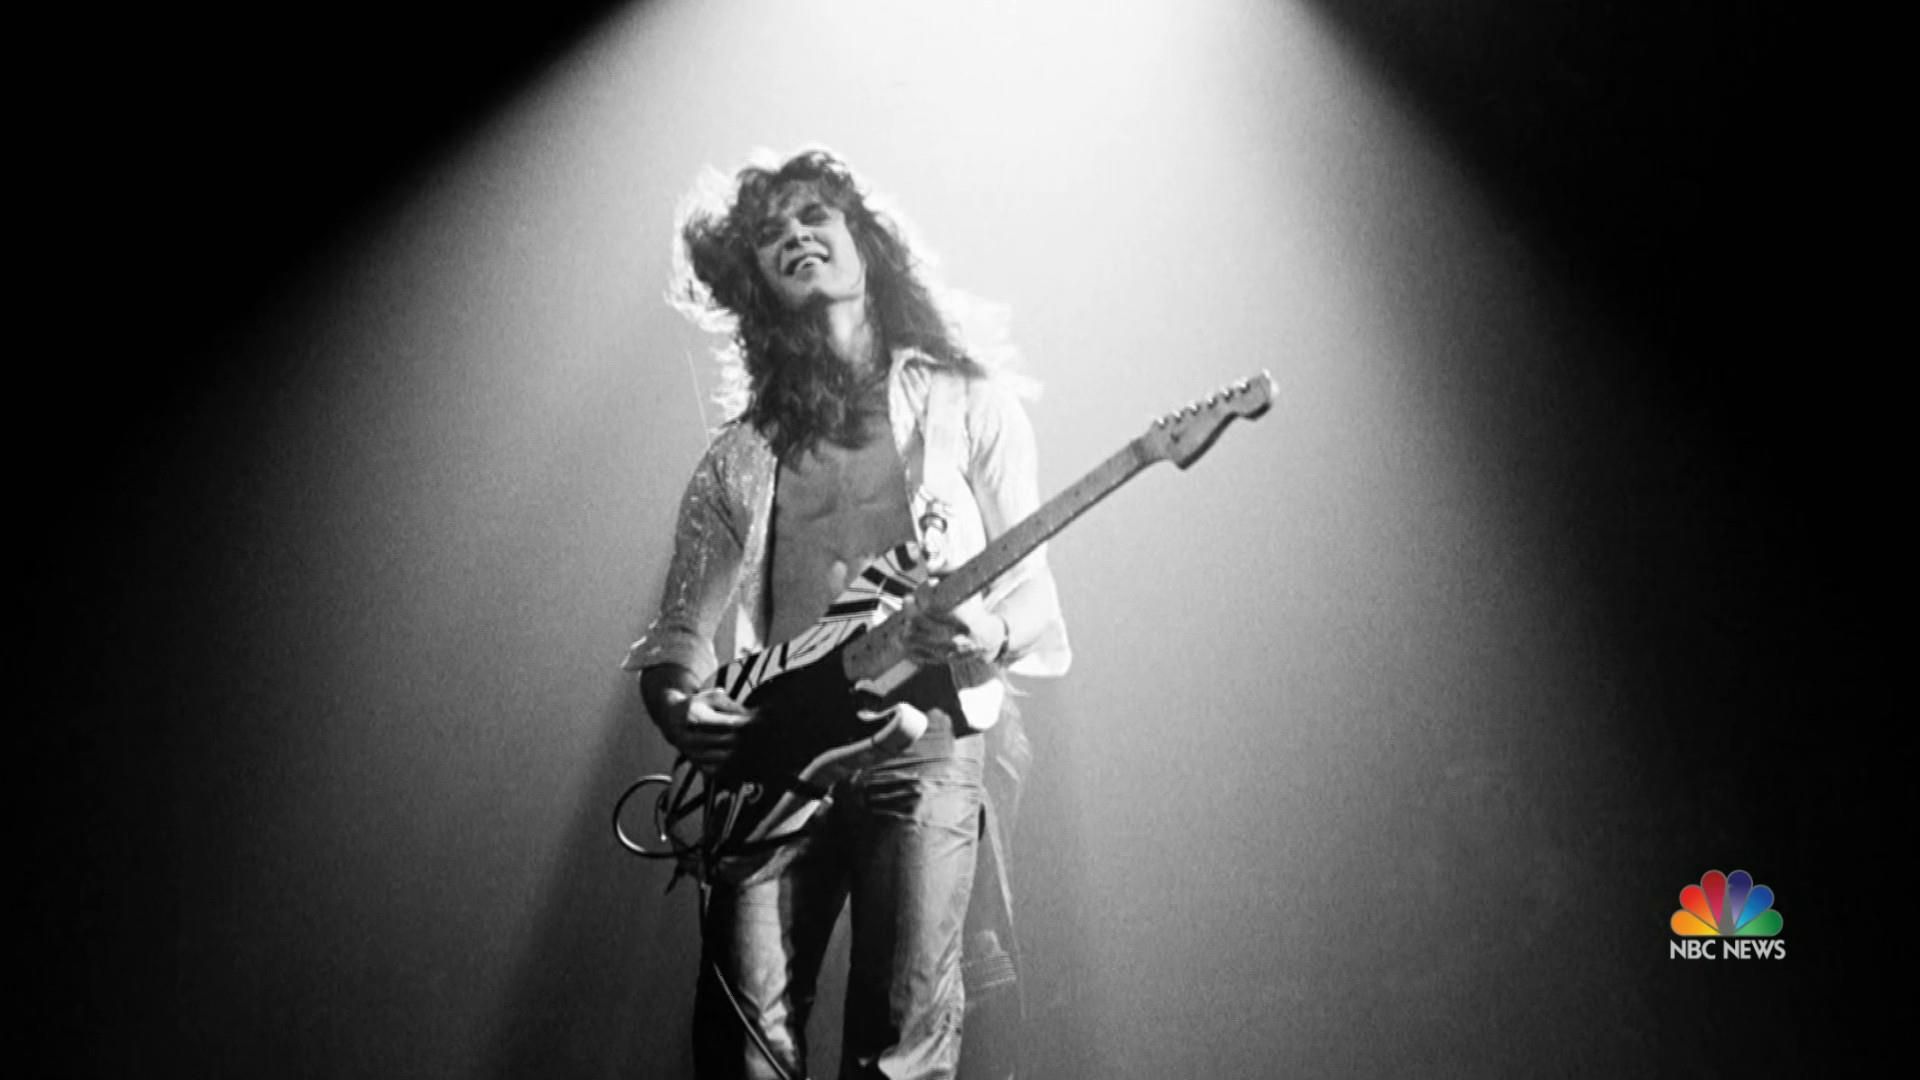 Eddie Van Halen, legendary guitarist of Van Halen, dies from cancer